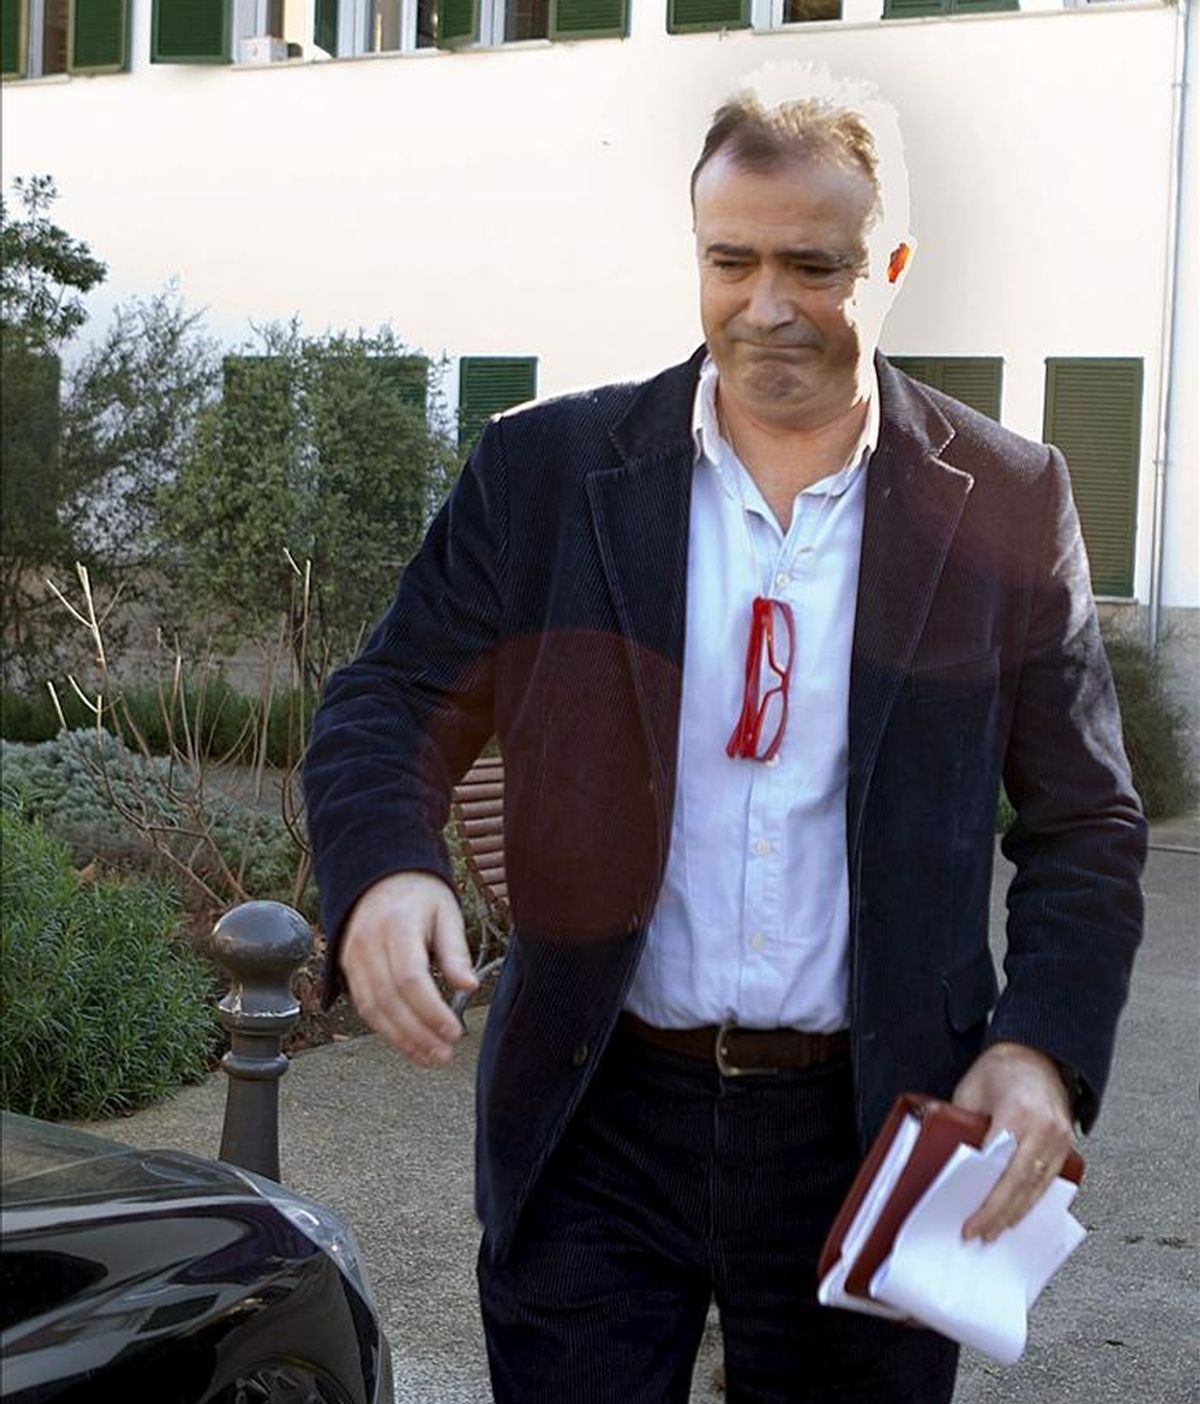 El fiscal Anticorrupción, Miguel Angel Subiran, abandona la sede de Medio Ambiente del Consell Insular de Mallorca durante el registro llevado a cabo durante la denominada "operación cloaca". EFE